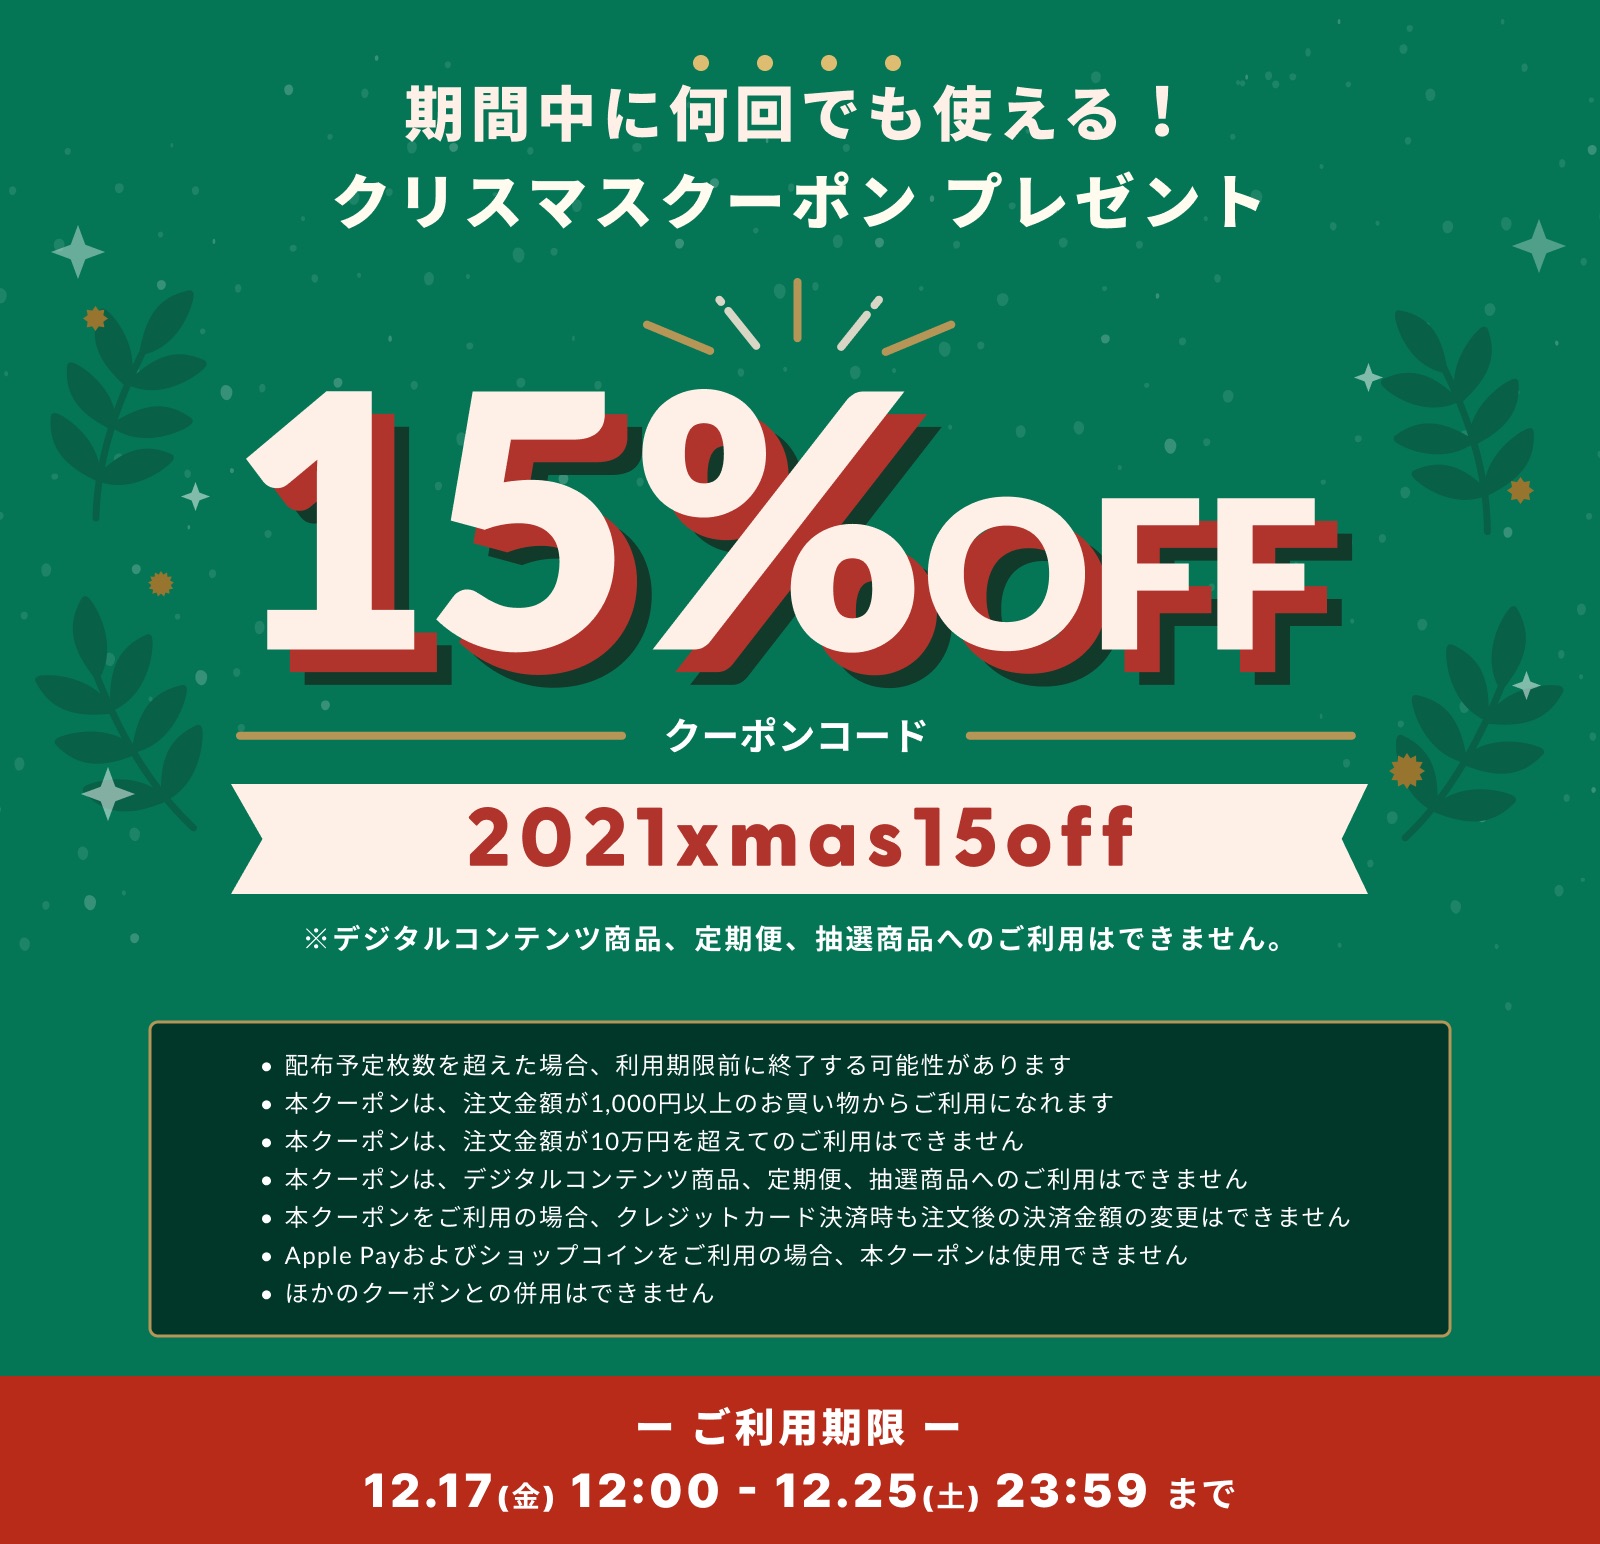 【期間限定】15%OFF クリスマスクーポンキャンペーン